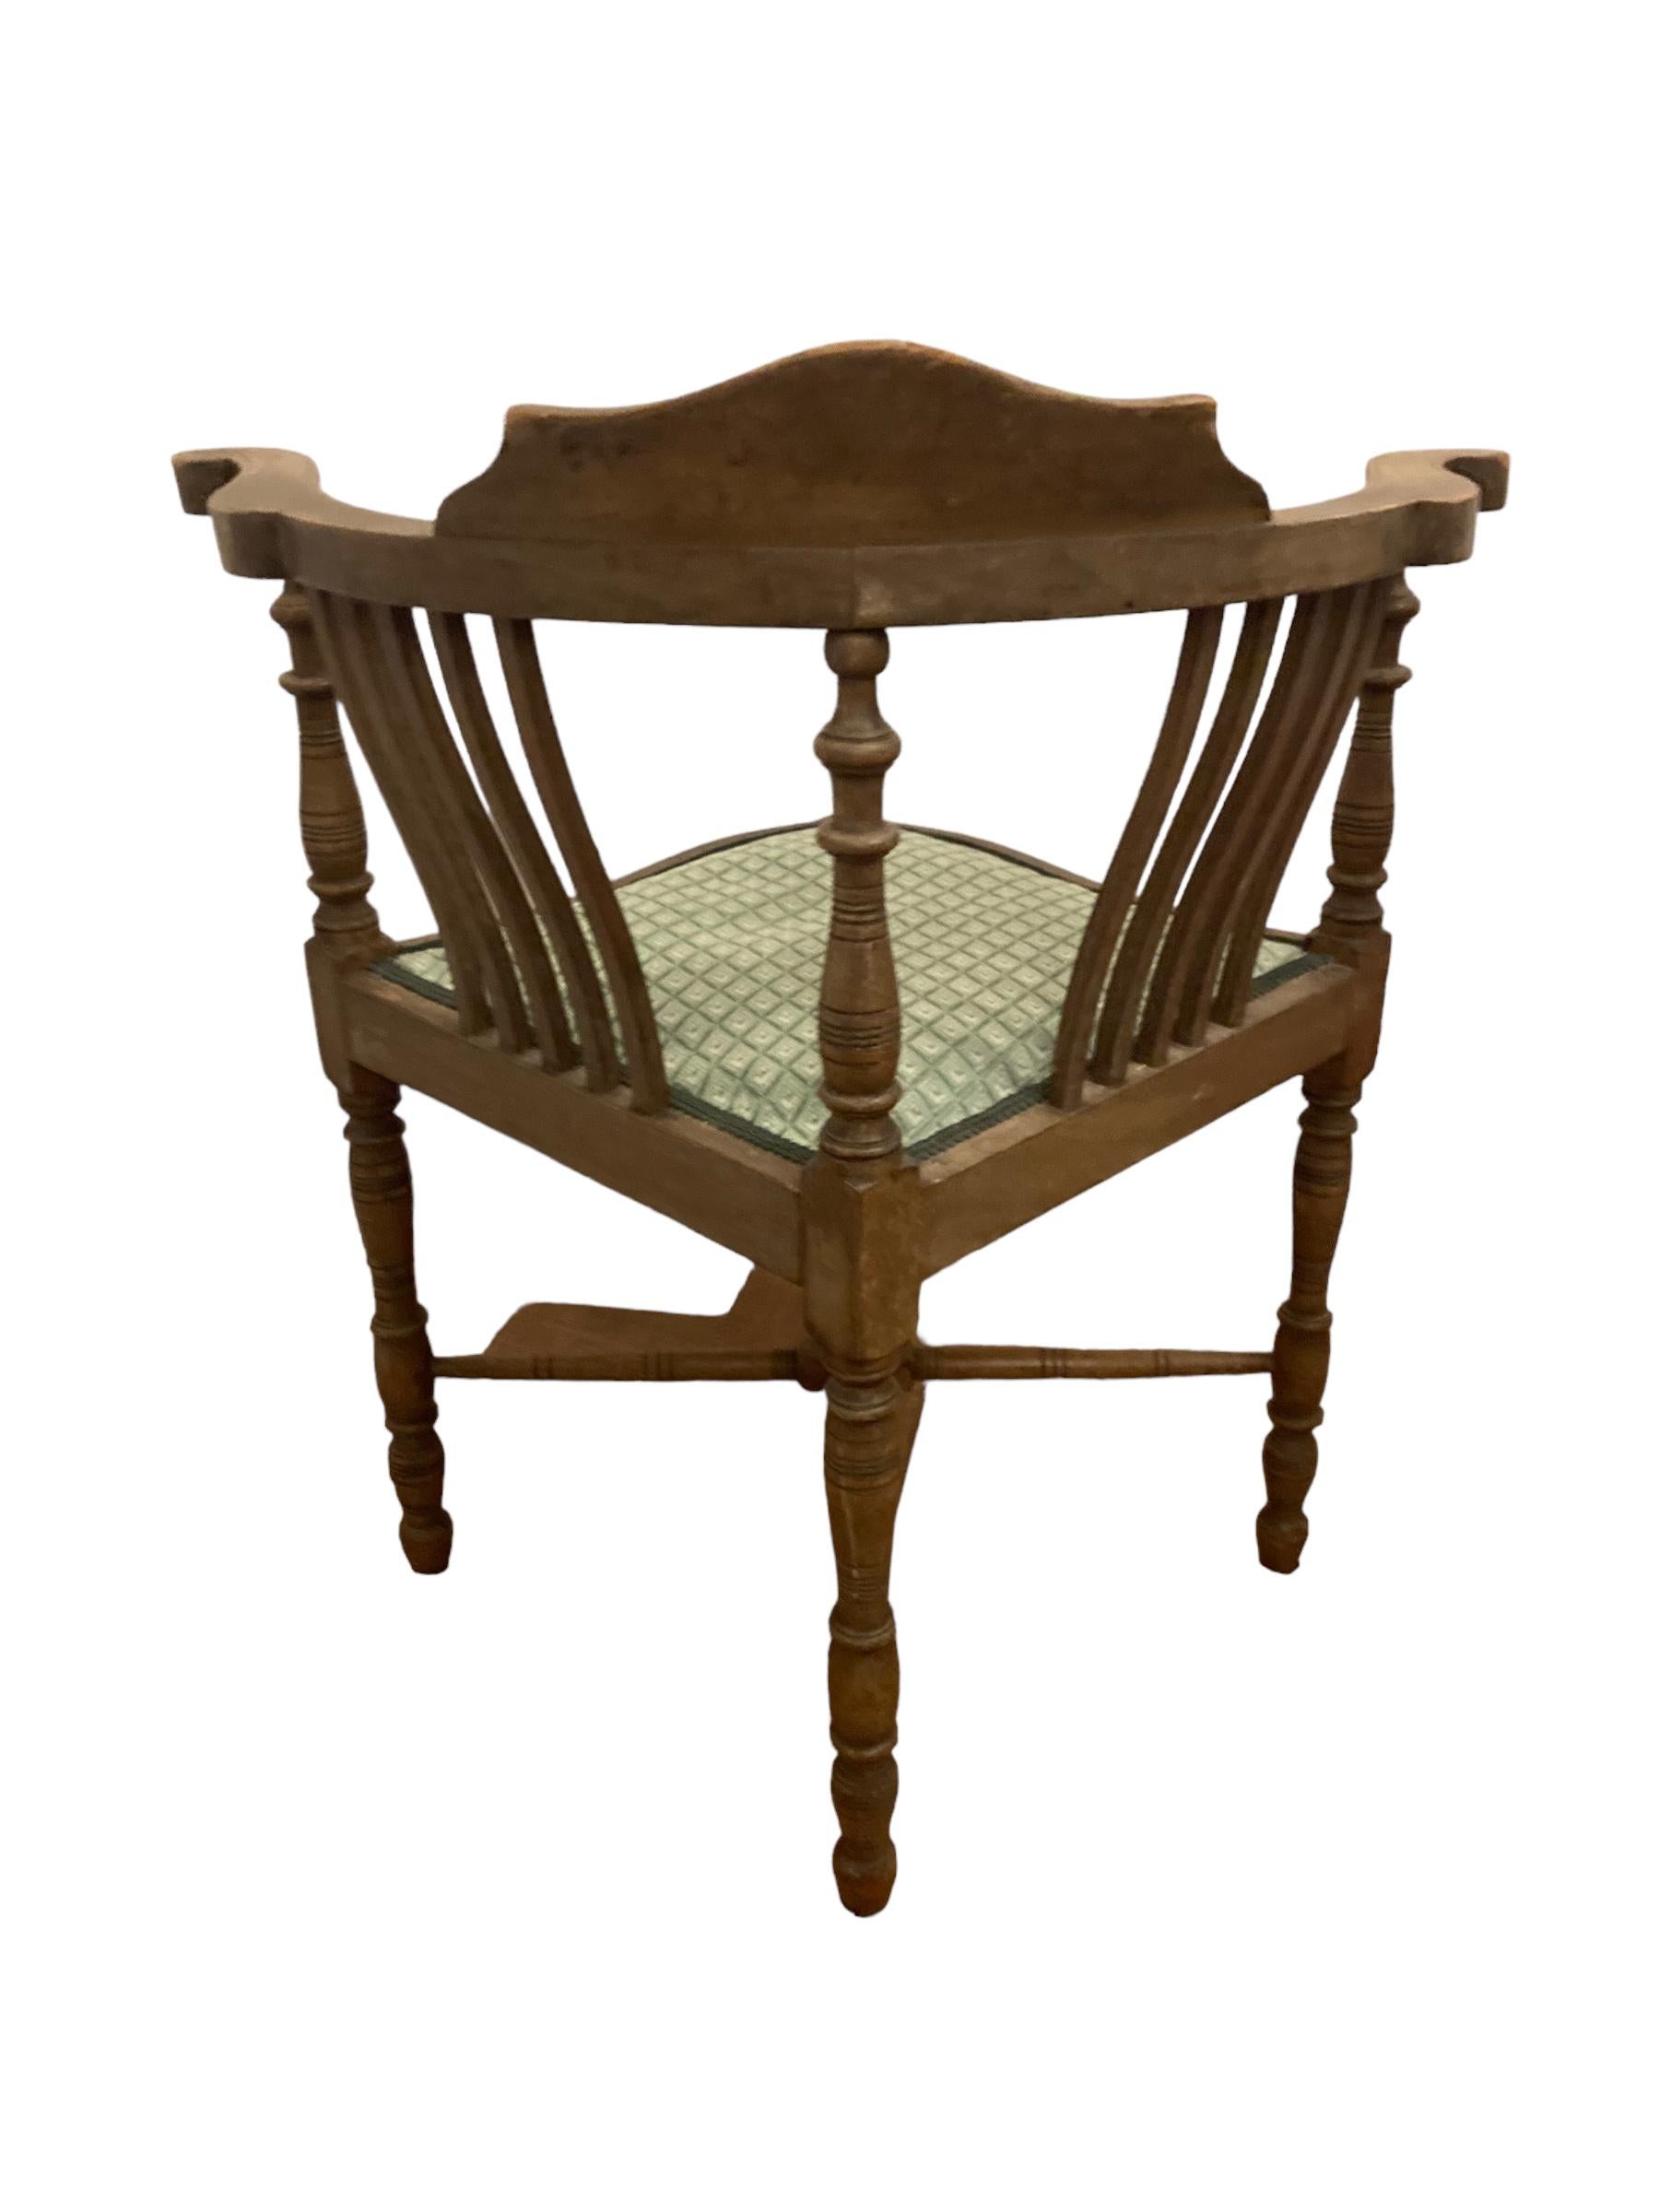 British Edwardian Inlaid Mahogany Corner Chair